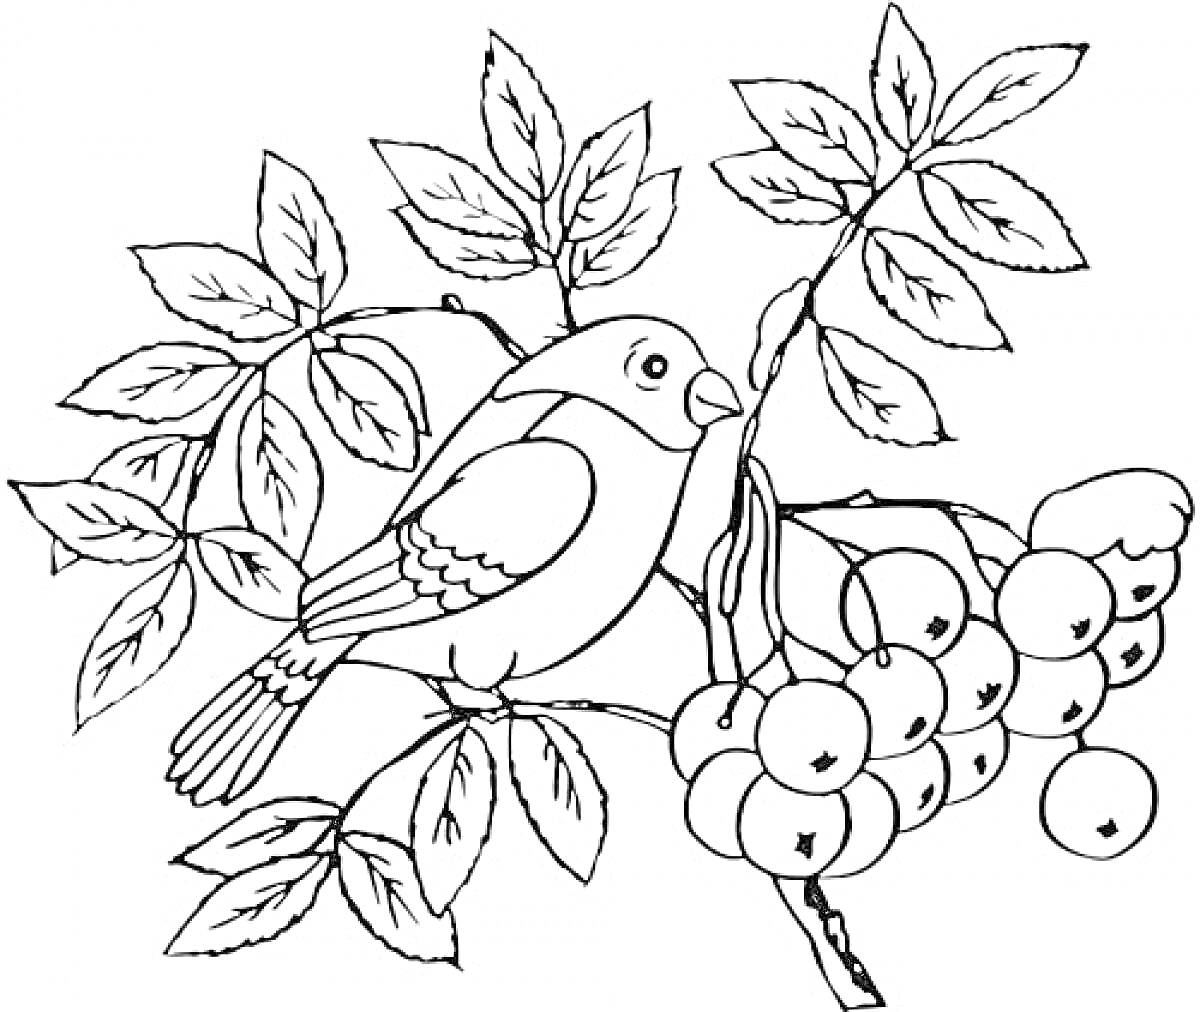 Птица на ветке рябины с ягодами и листьями